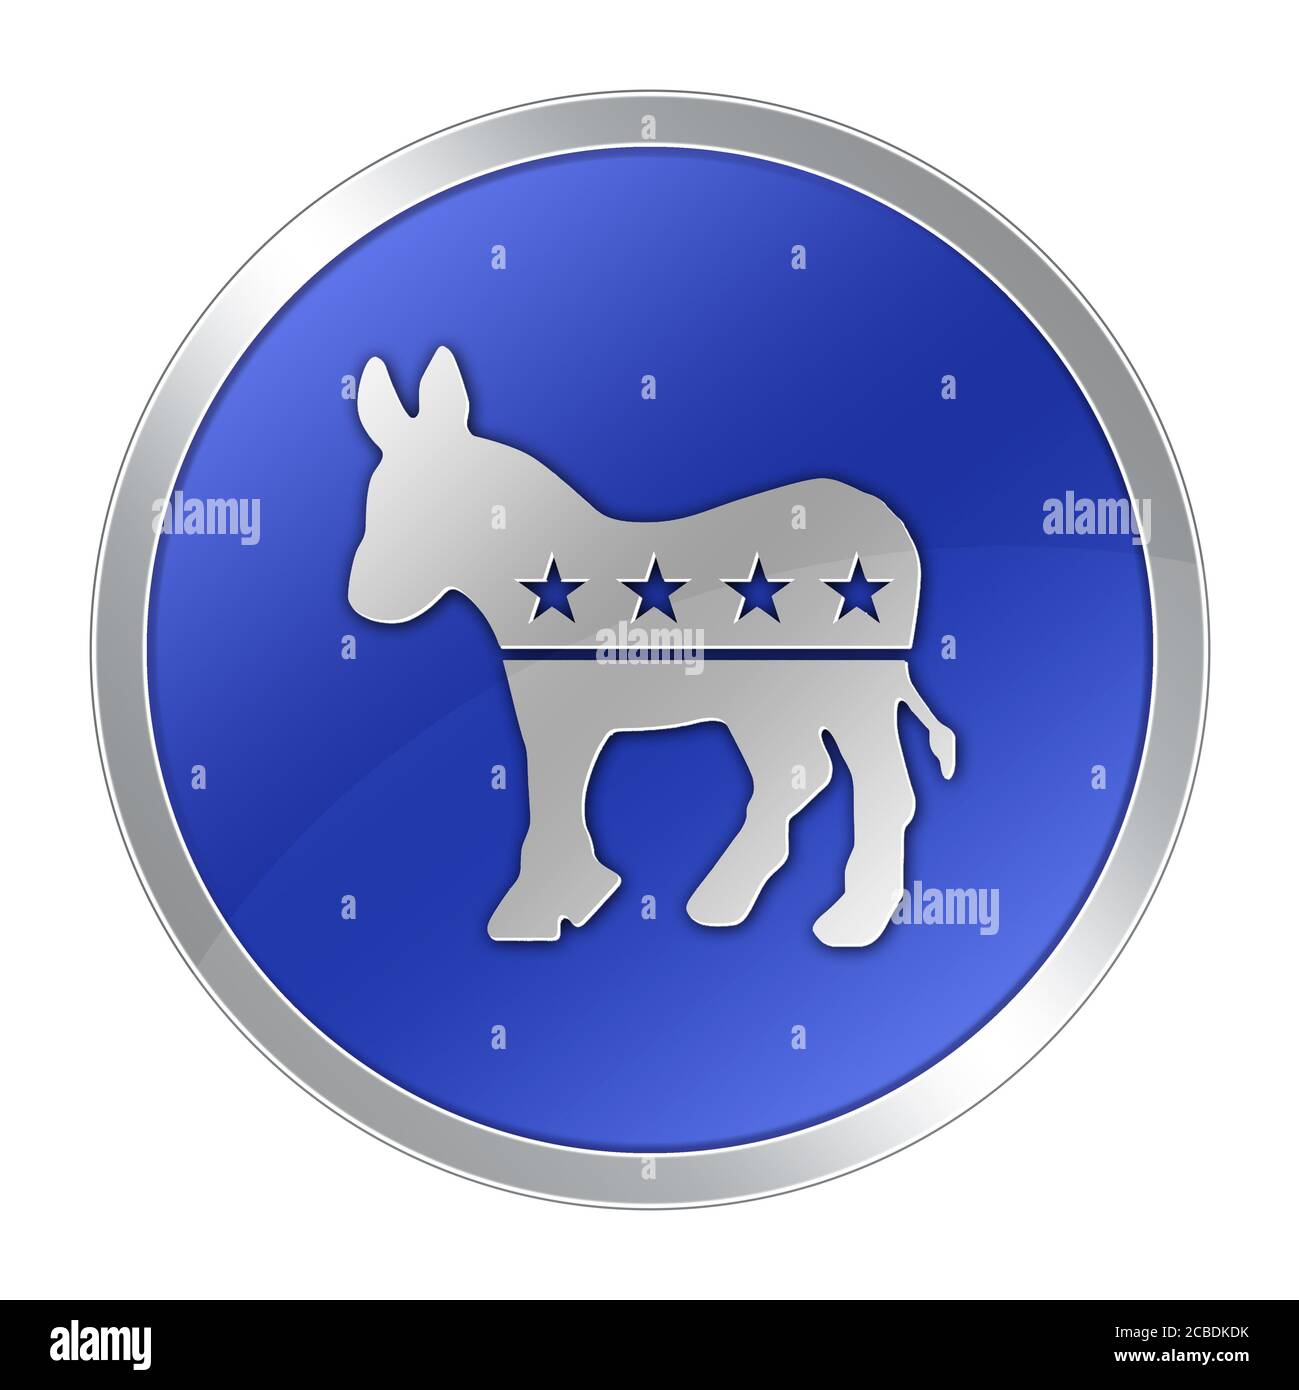 Partito democratico logo icona politica di asino Foto Stock